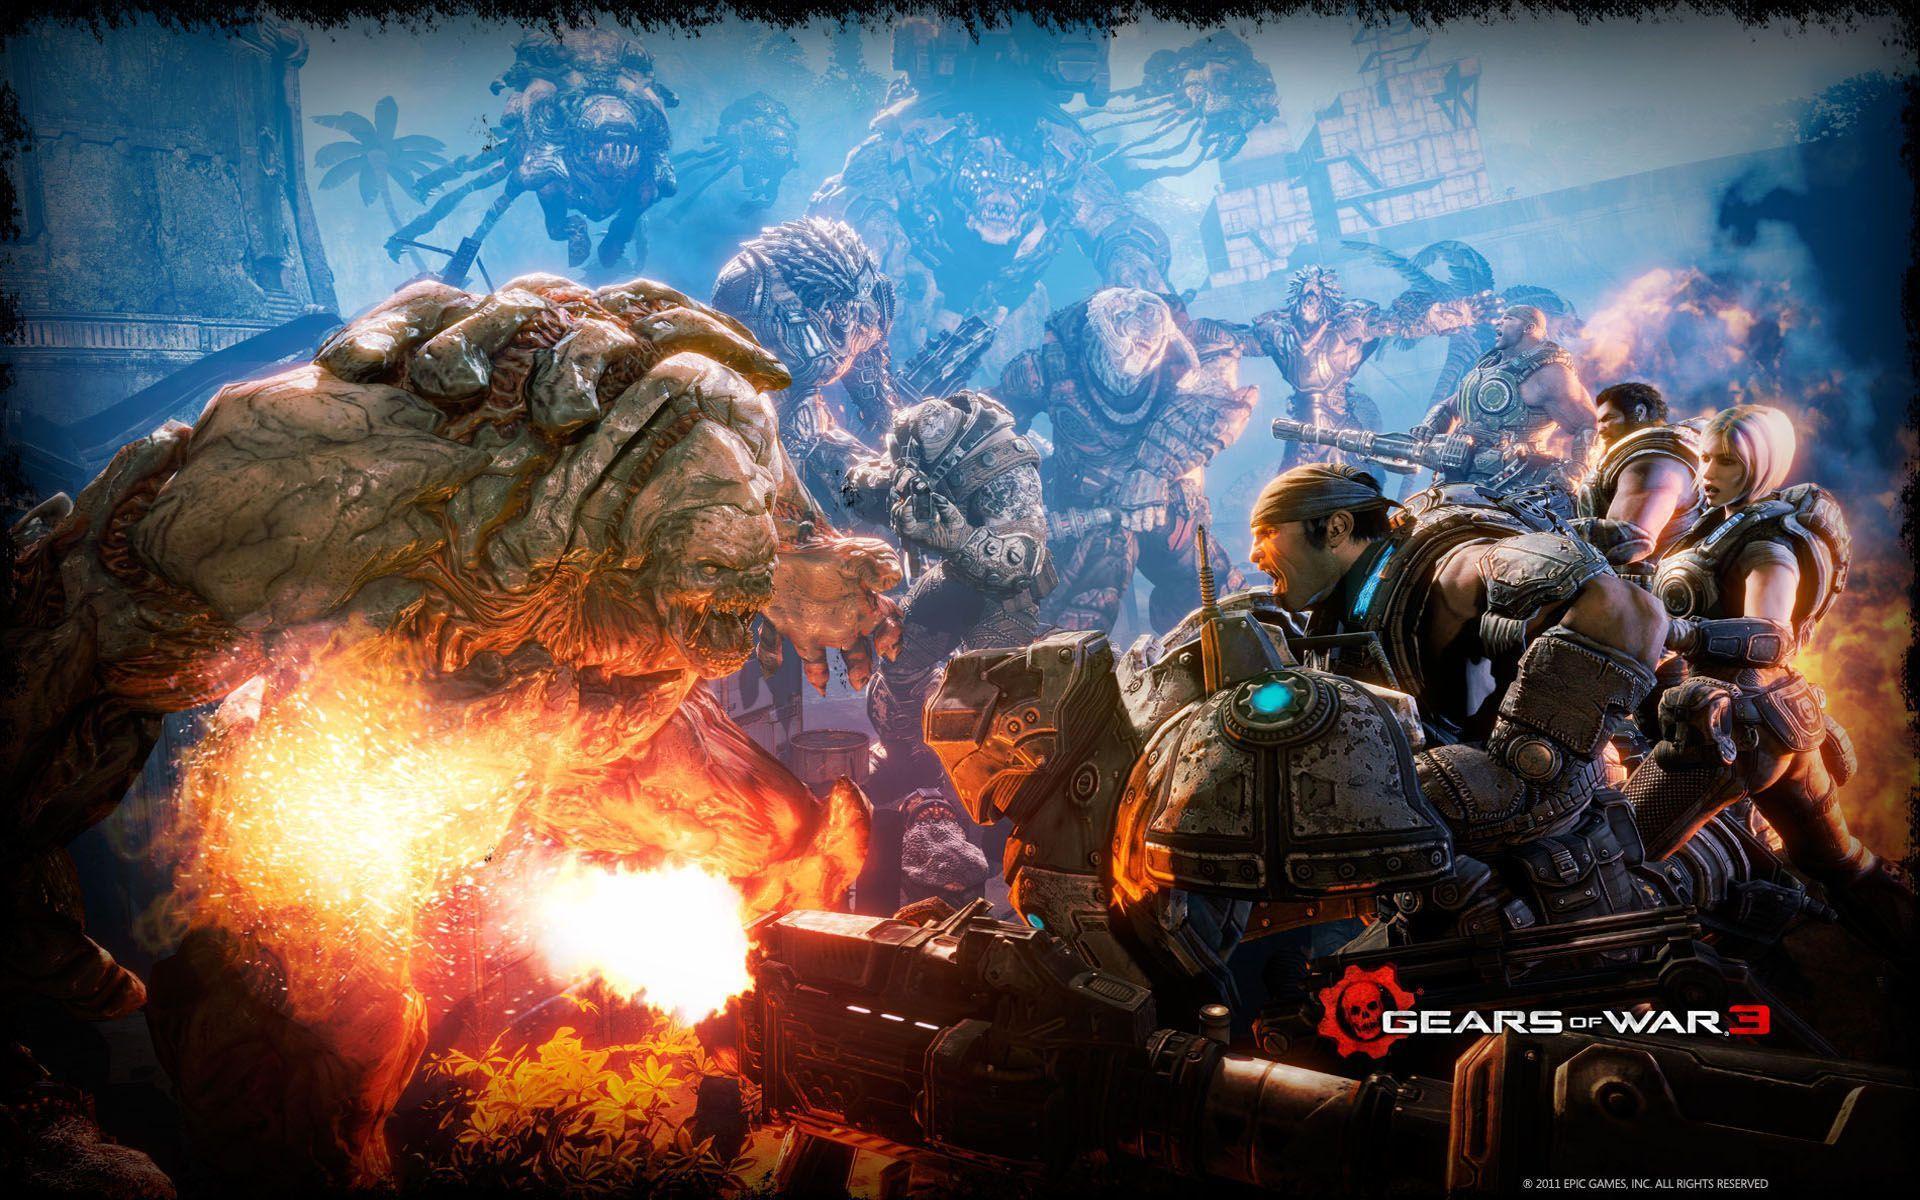 Download Gears of War 3 Battle Wallpaper High Resolution HD